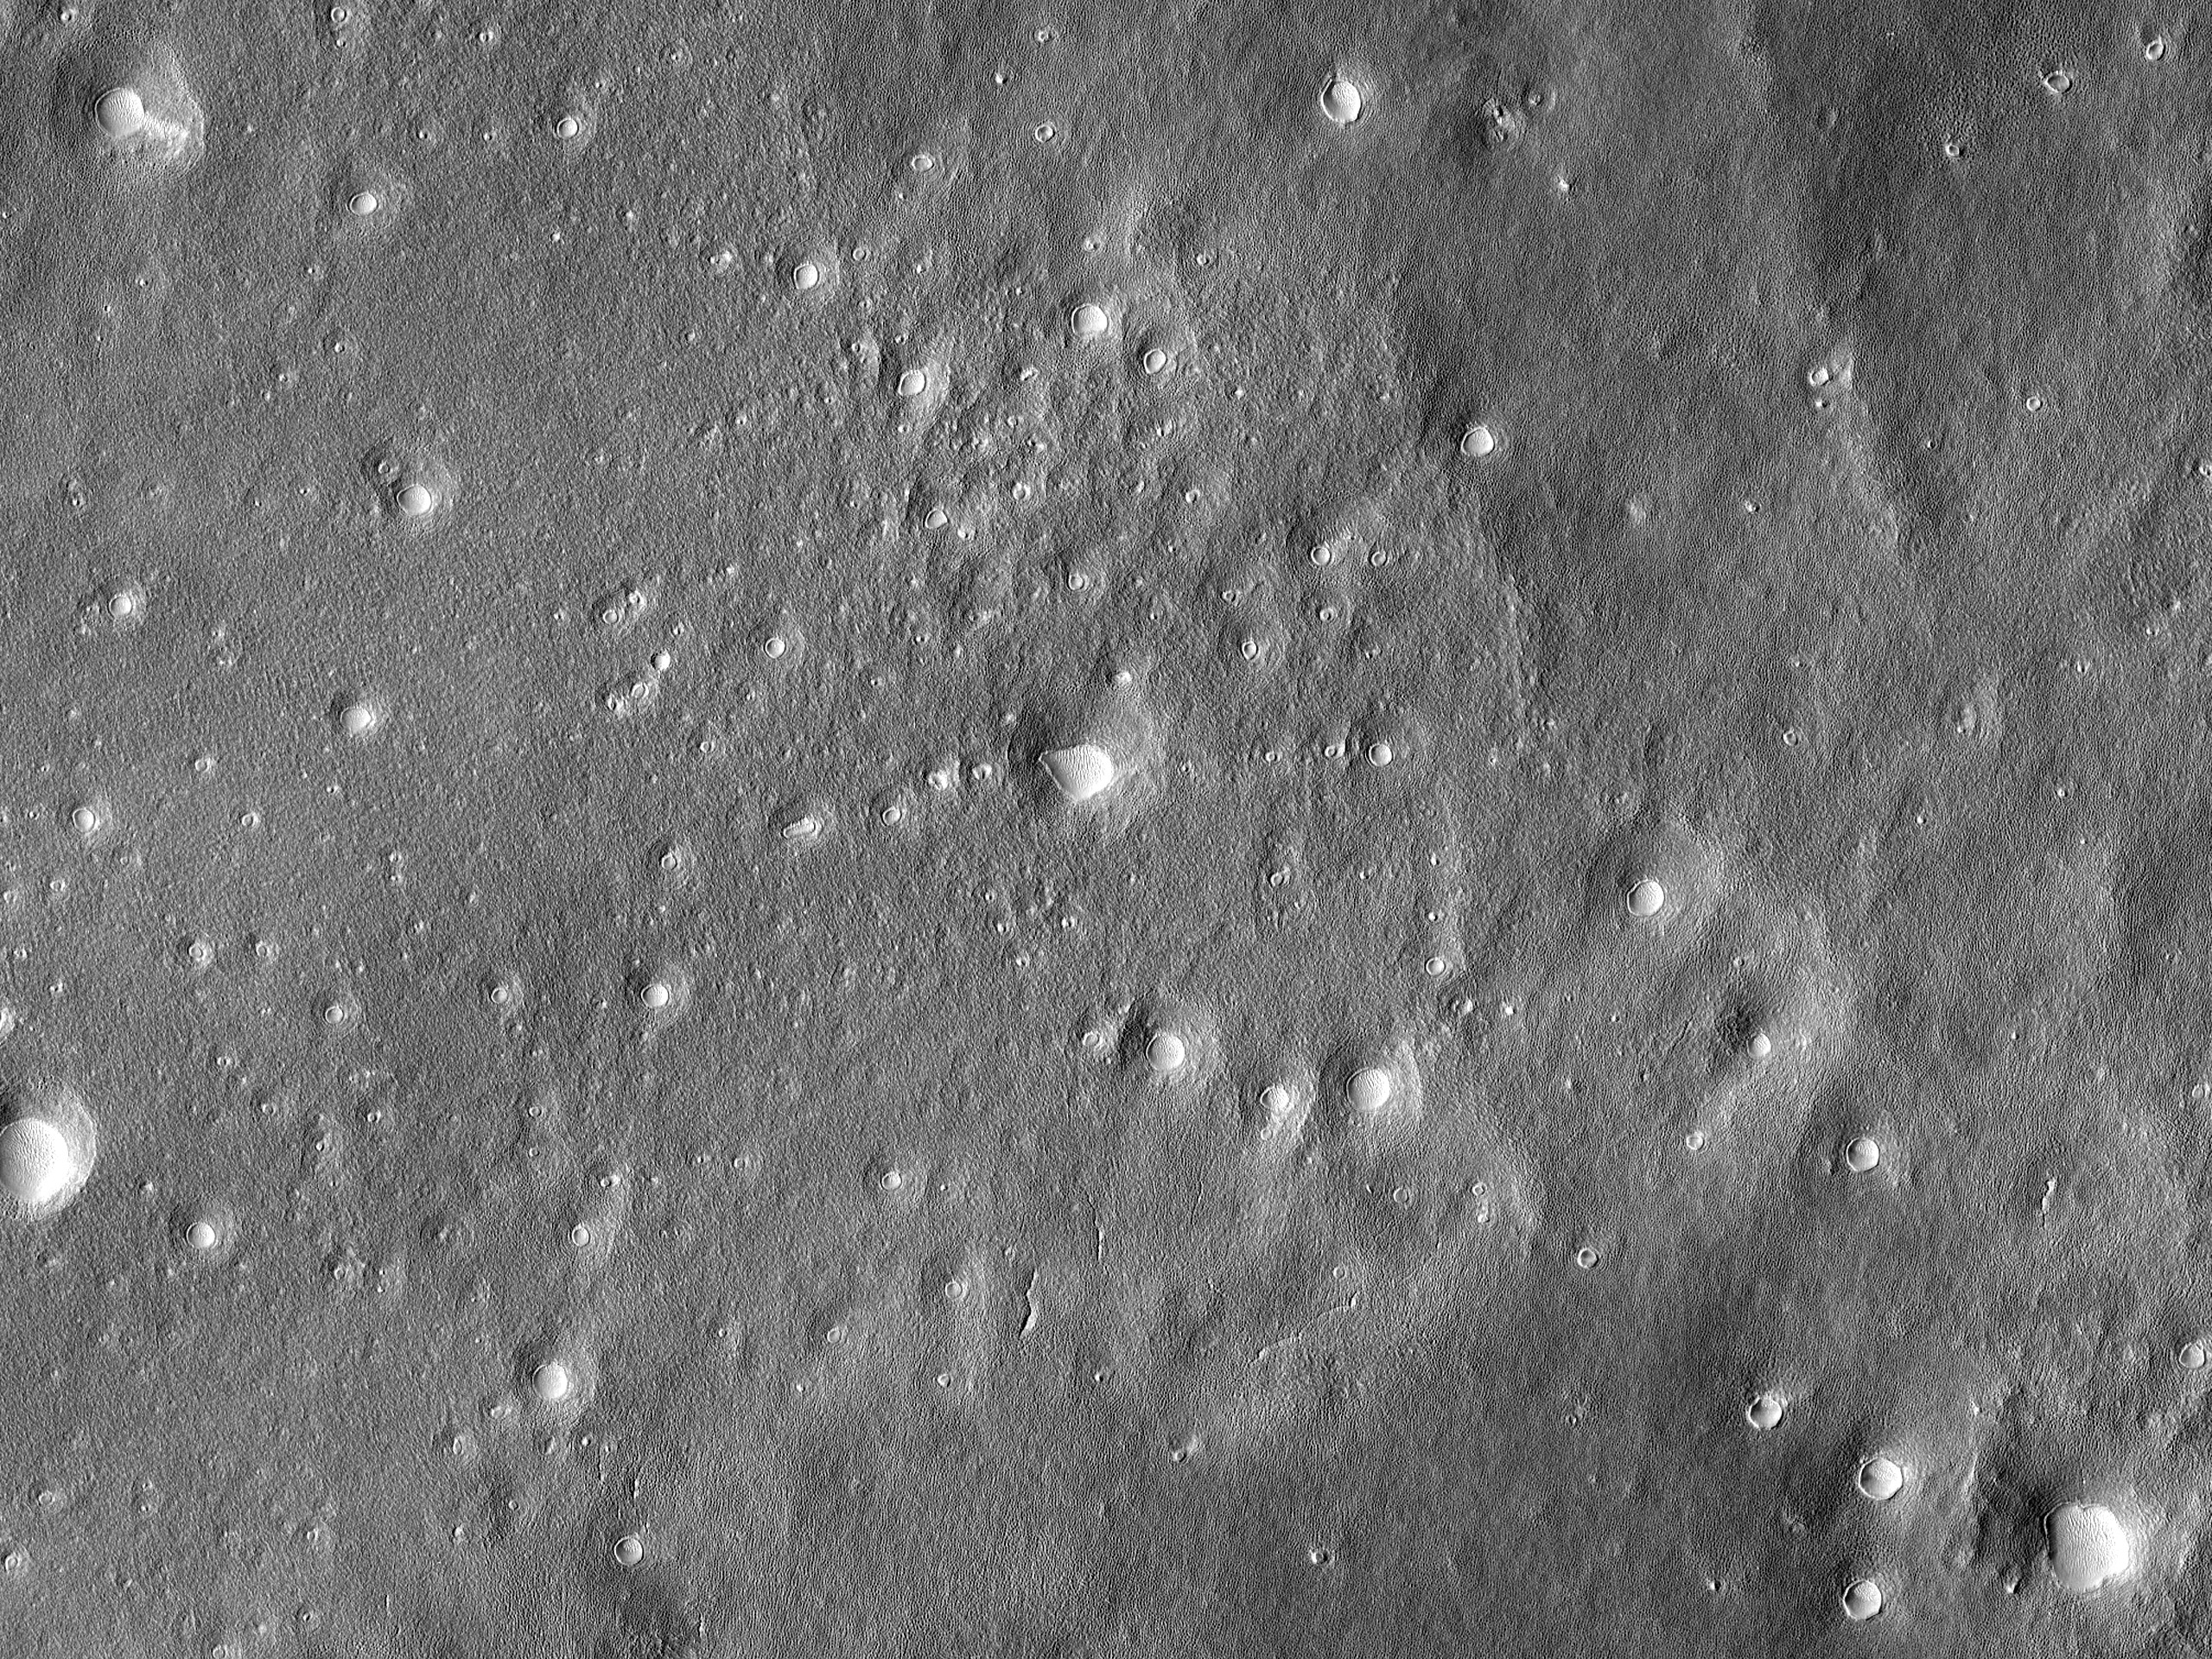 Kiterjedt kráterek és kisebb dombok az északi síkságokon